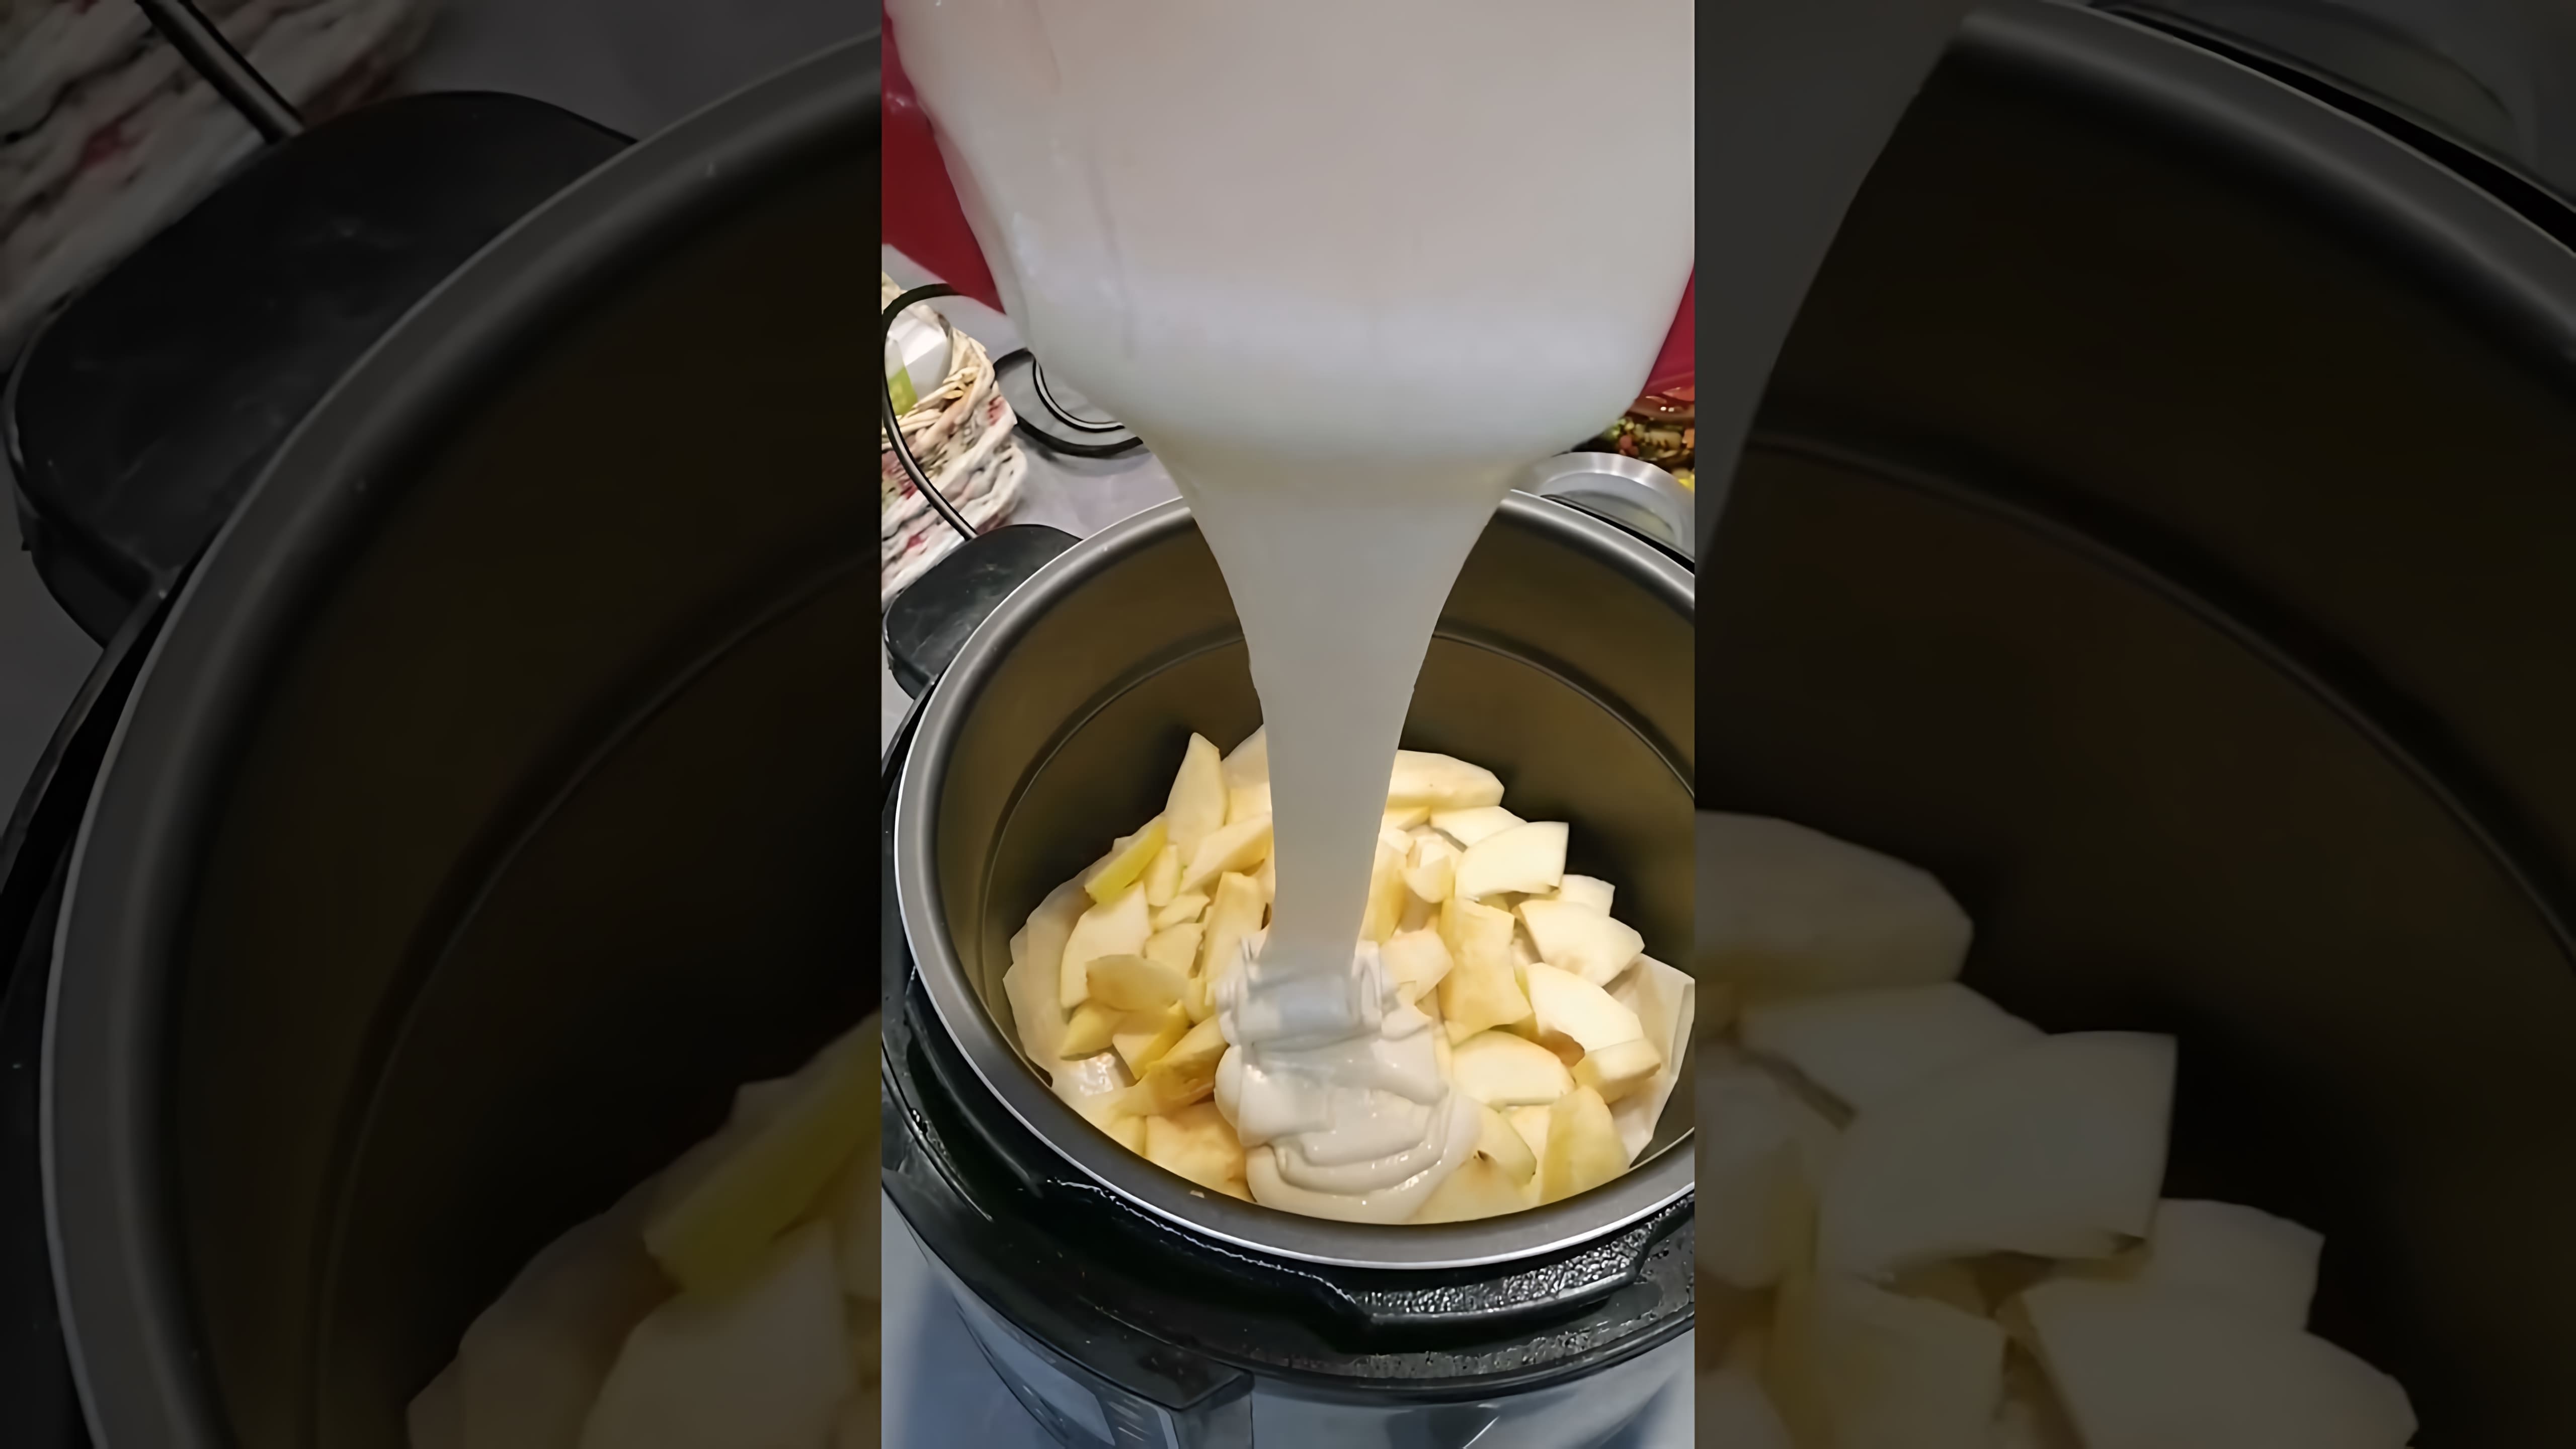 В этом видео демонстрируется процесс приготовления шарлотки или яблочного пирога в мультиварке